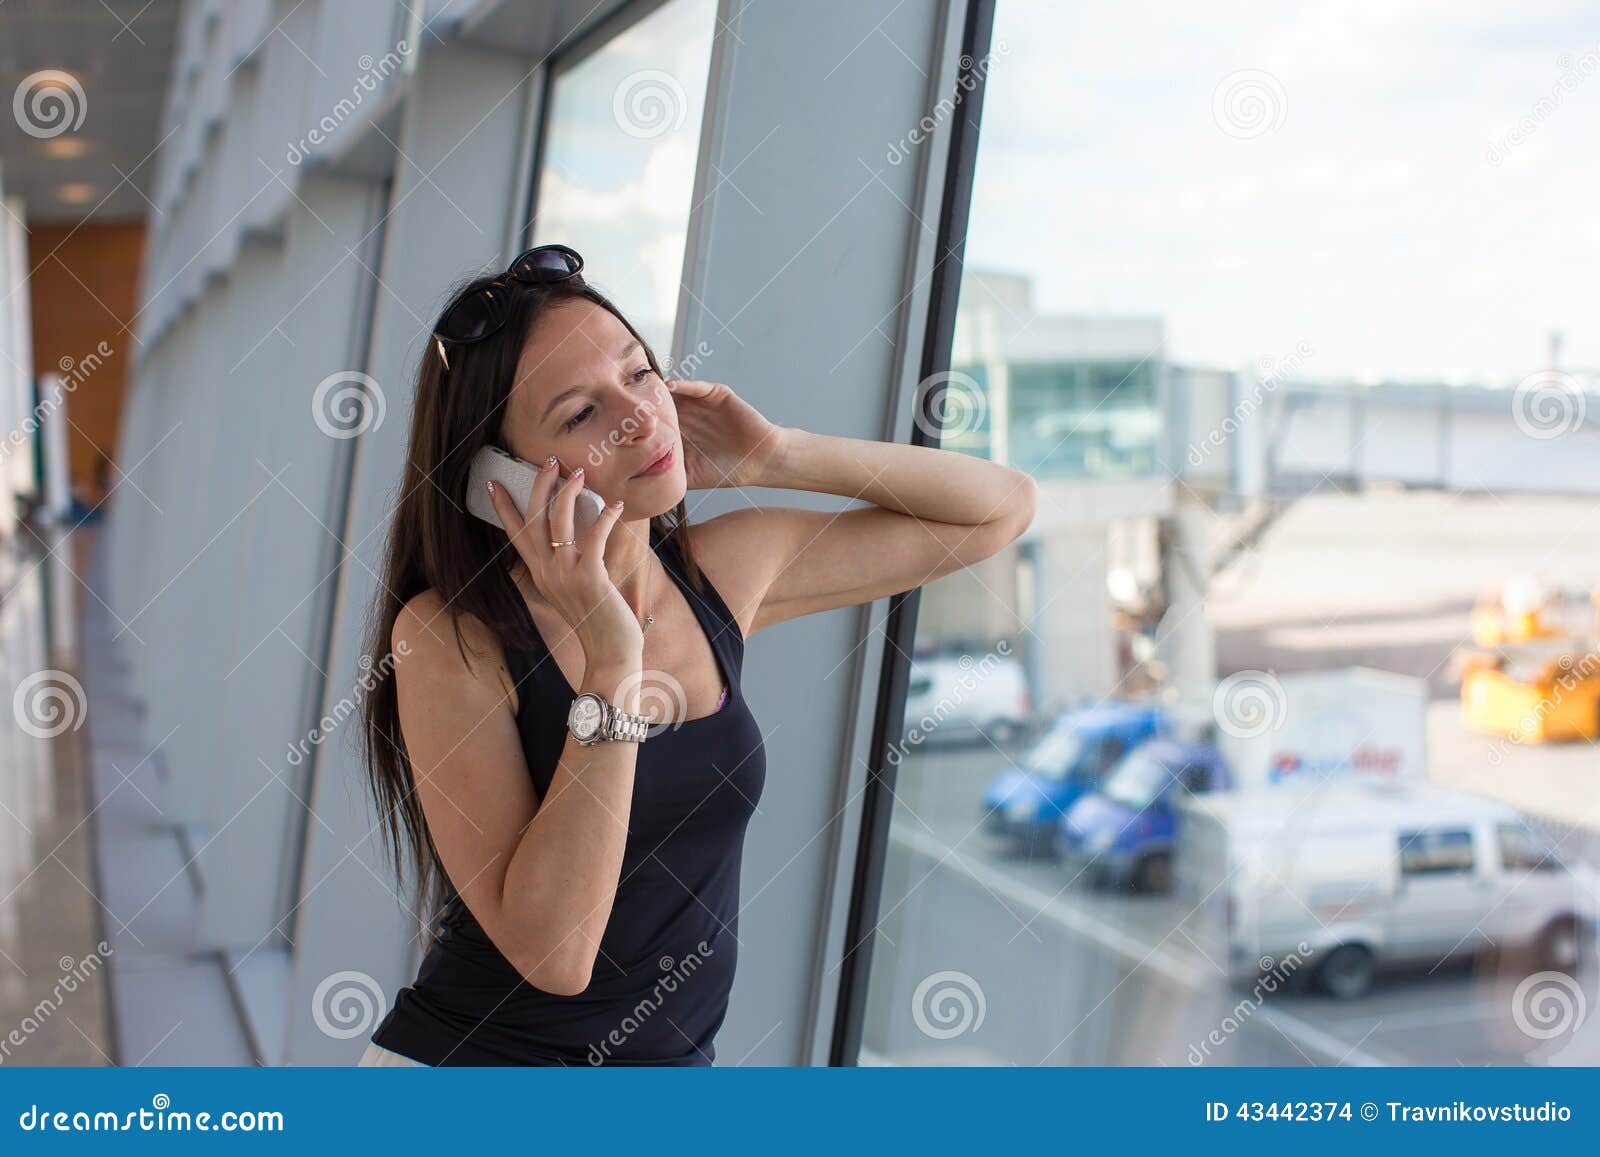 Пока она разговаривала по телефону видео. Девушка в аэропорту говорит по телефону. Девушка в майке говорит по телефону. Пока разговаривала по телефону. Фото девушка стоит говорит по телефону.